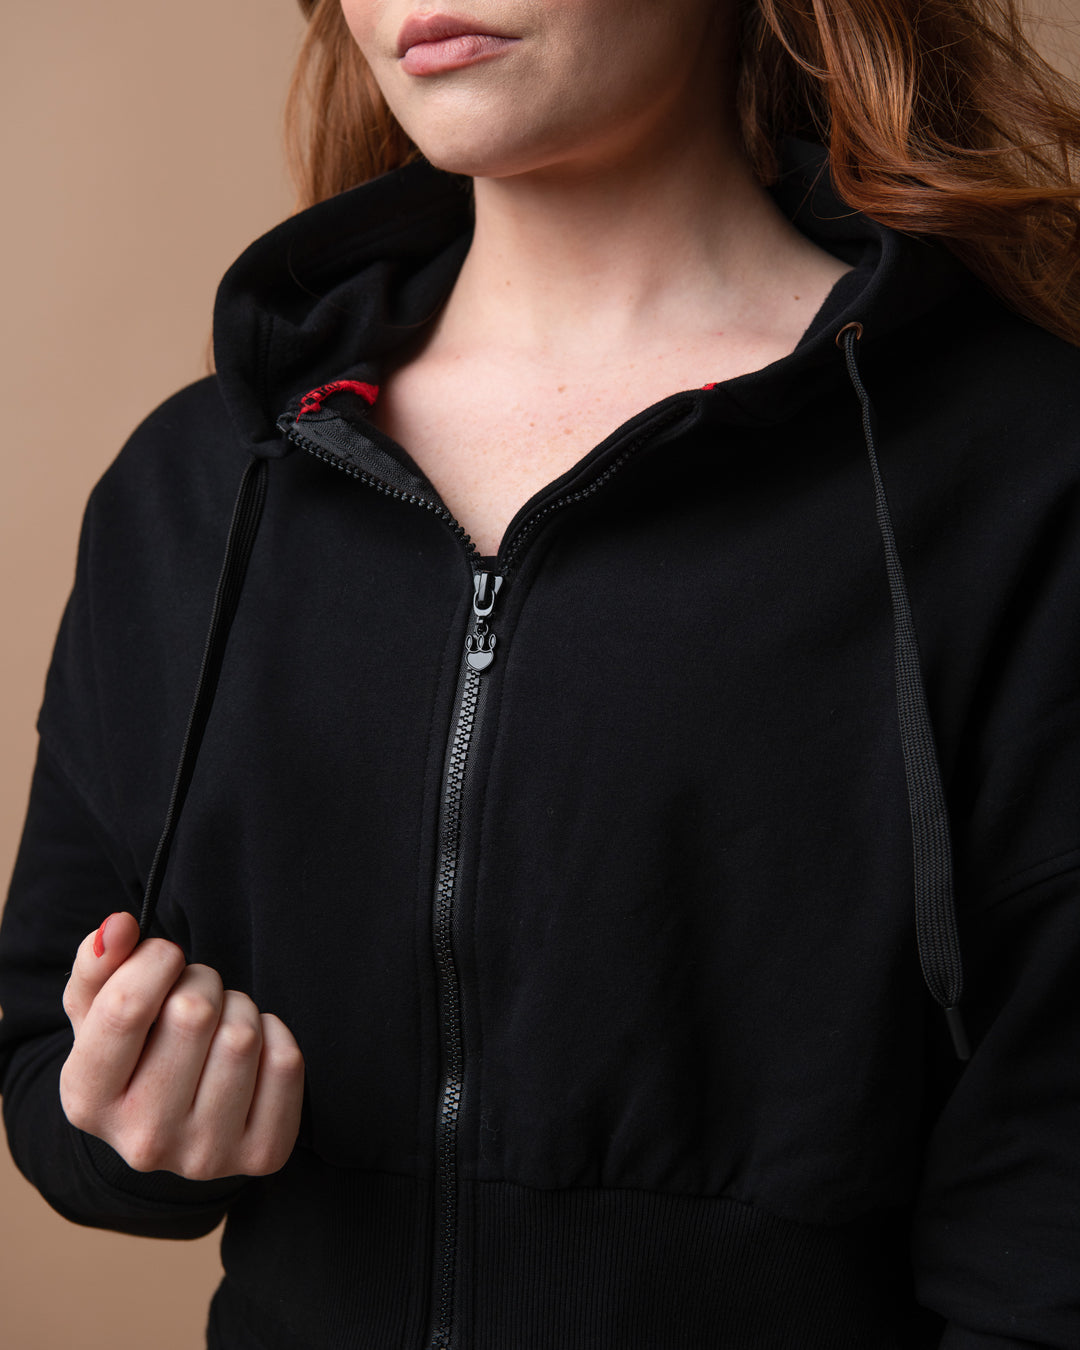 KADYLUXE® womens fleece zip hoodie in black close up view